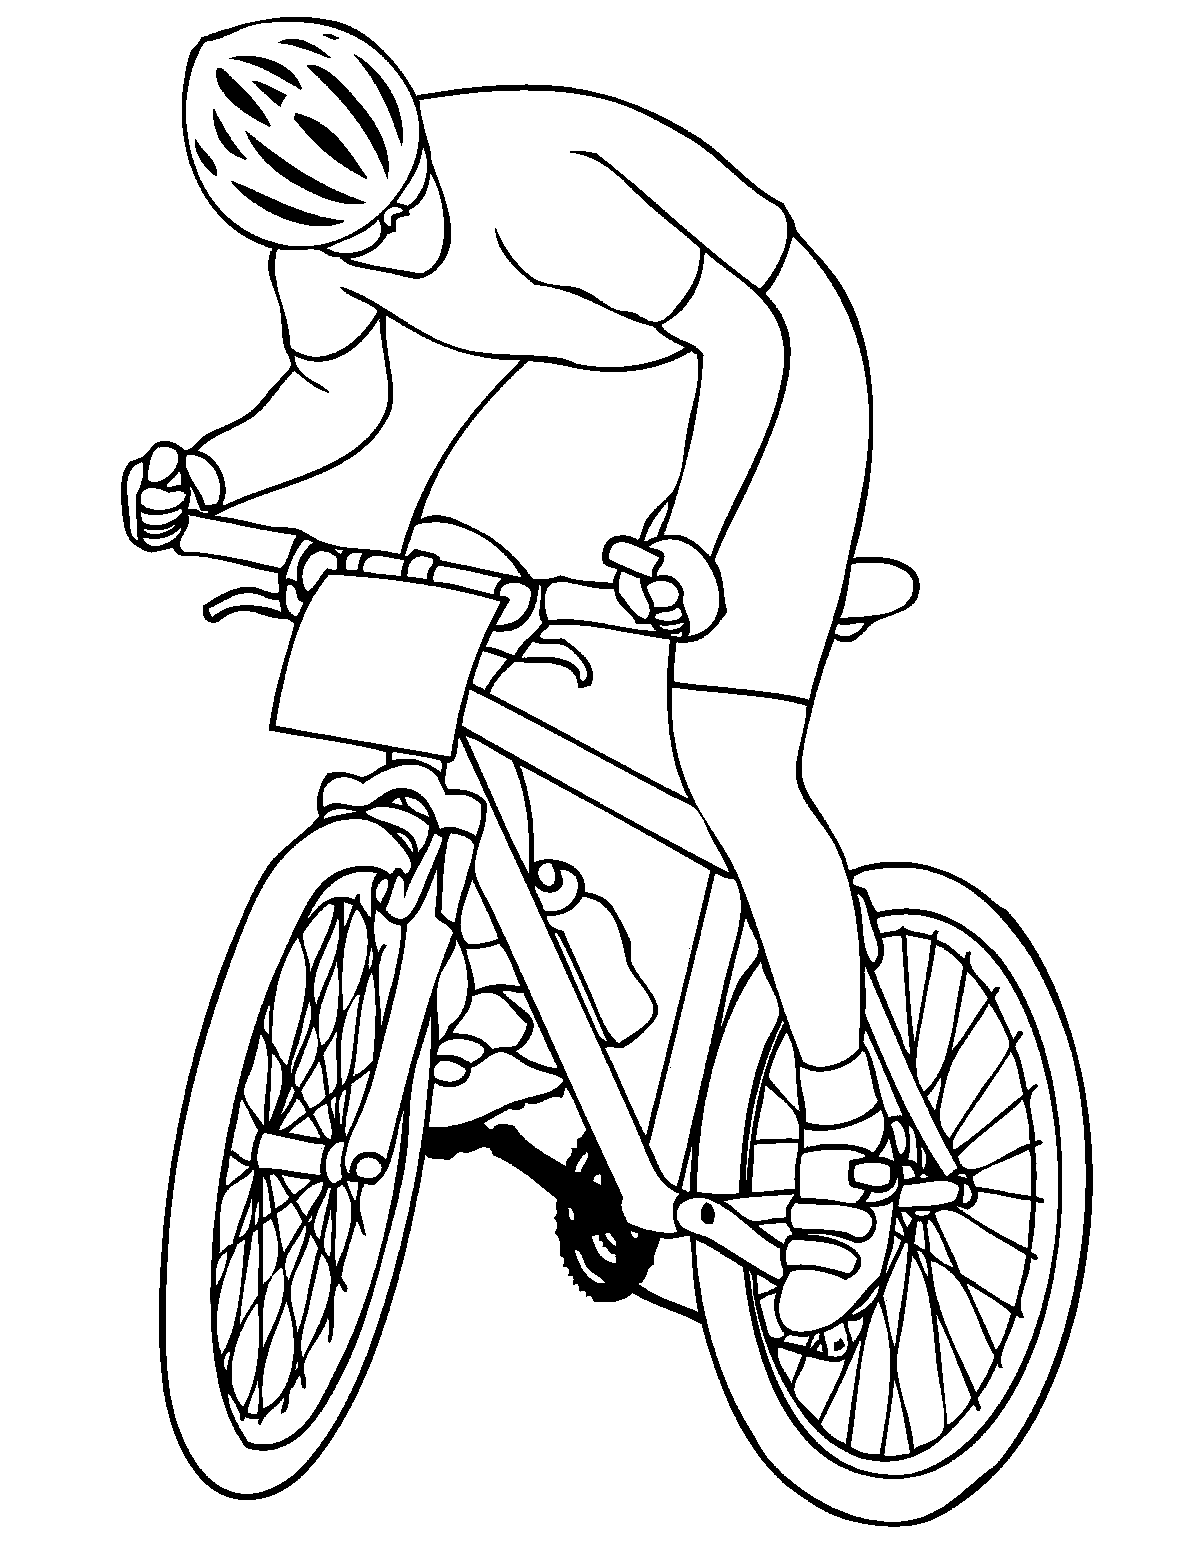 راكب الدراجة النارية الجبلية من ركوب الدراجات